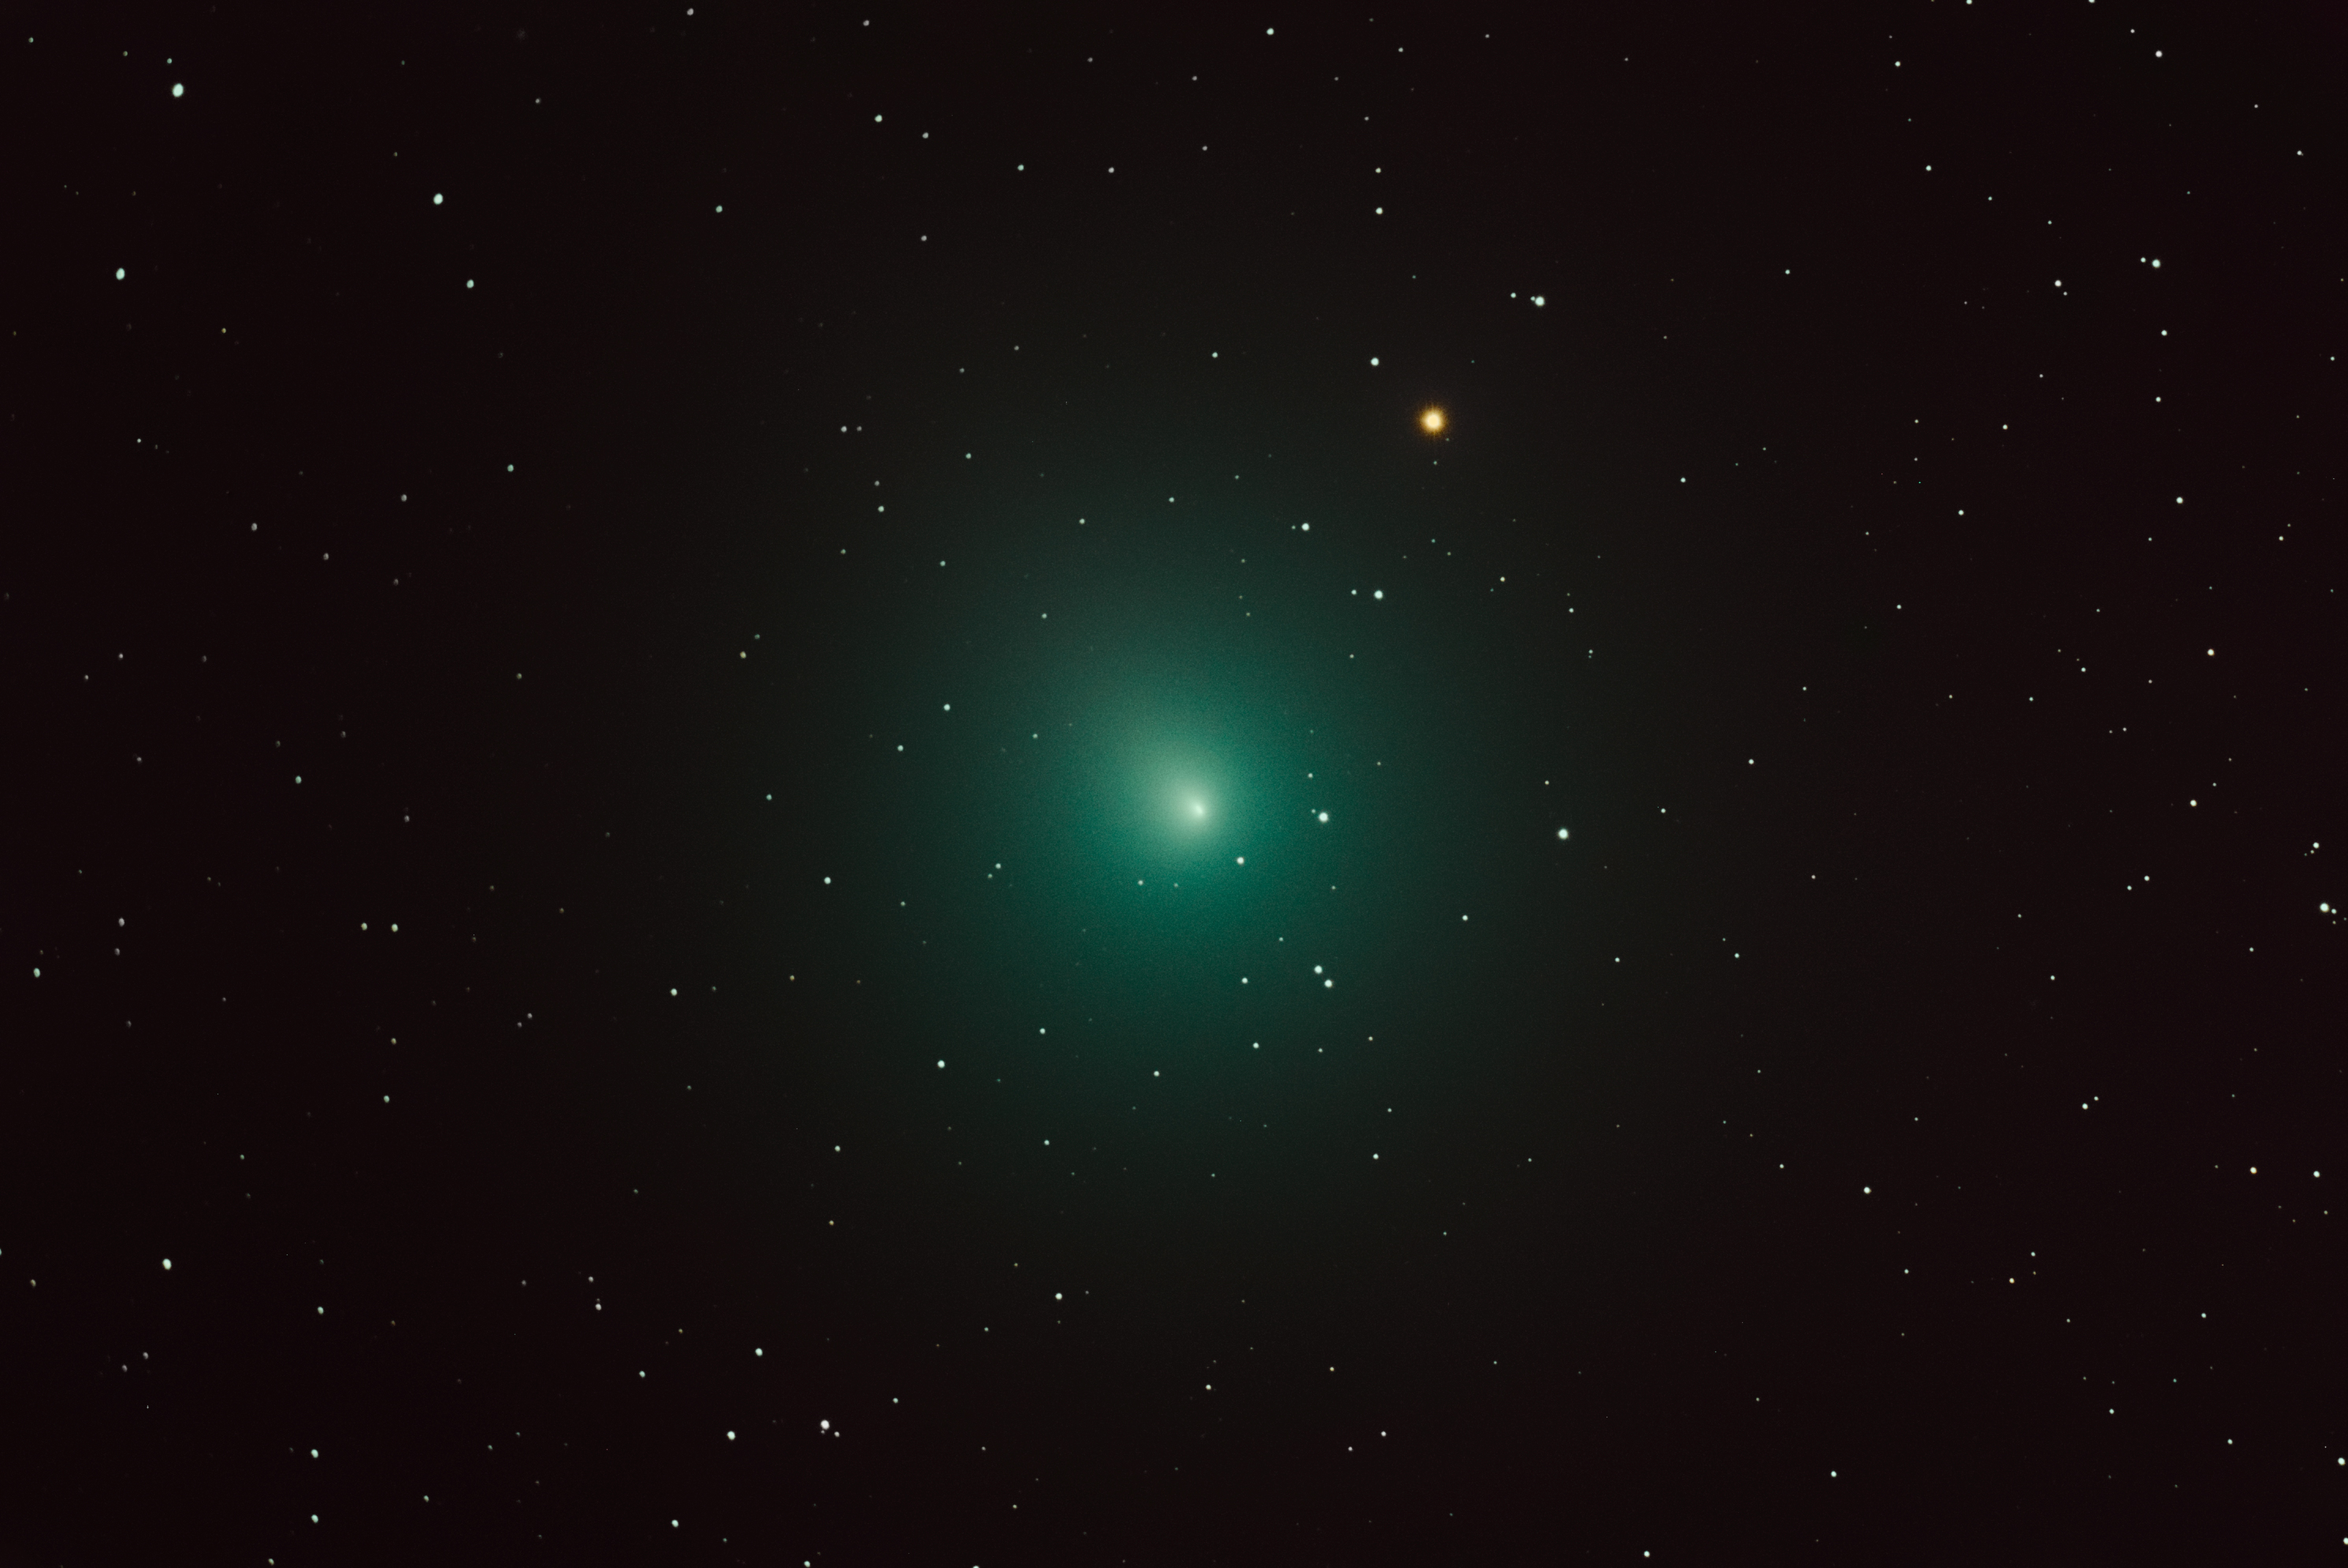 Kometa 46/Witaren - zdjęcie teleskopowe